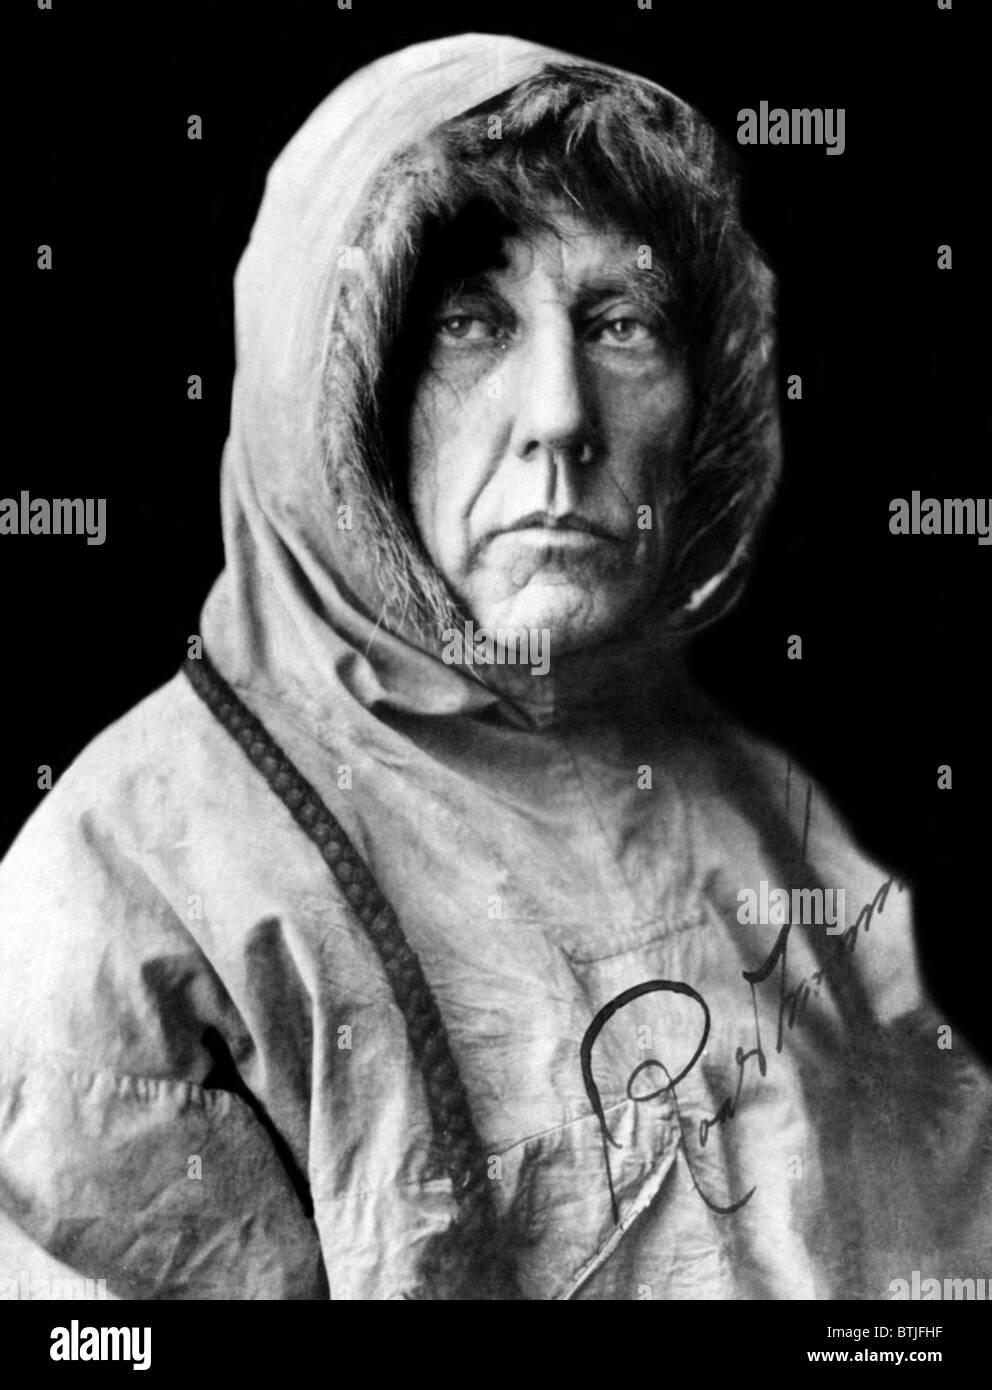 Roald Amundsen, la prima persona a raggiungere il Polo Sud. L'esploratore norvegese ha reso vi nel 1911. Foto scattata nel 1925. Cou Foto Stock